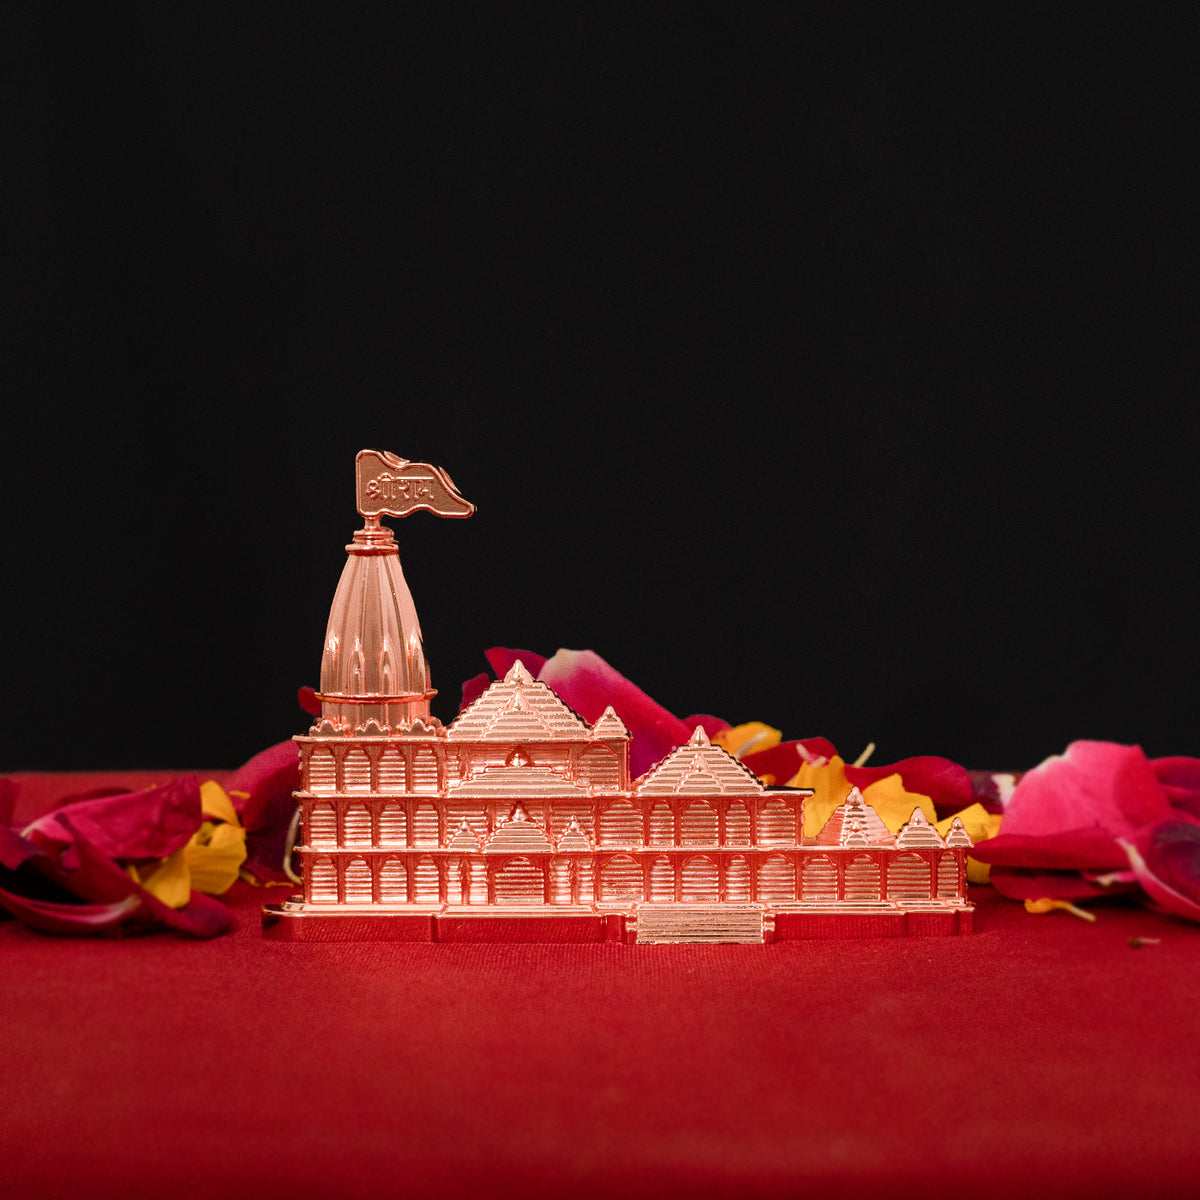 Ram Mandir Ayodhya Miniature Metallic Showpiece for Car Dashboard, Home Decor & Gifts